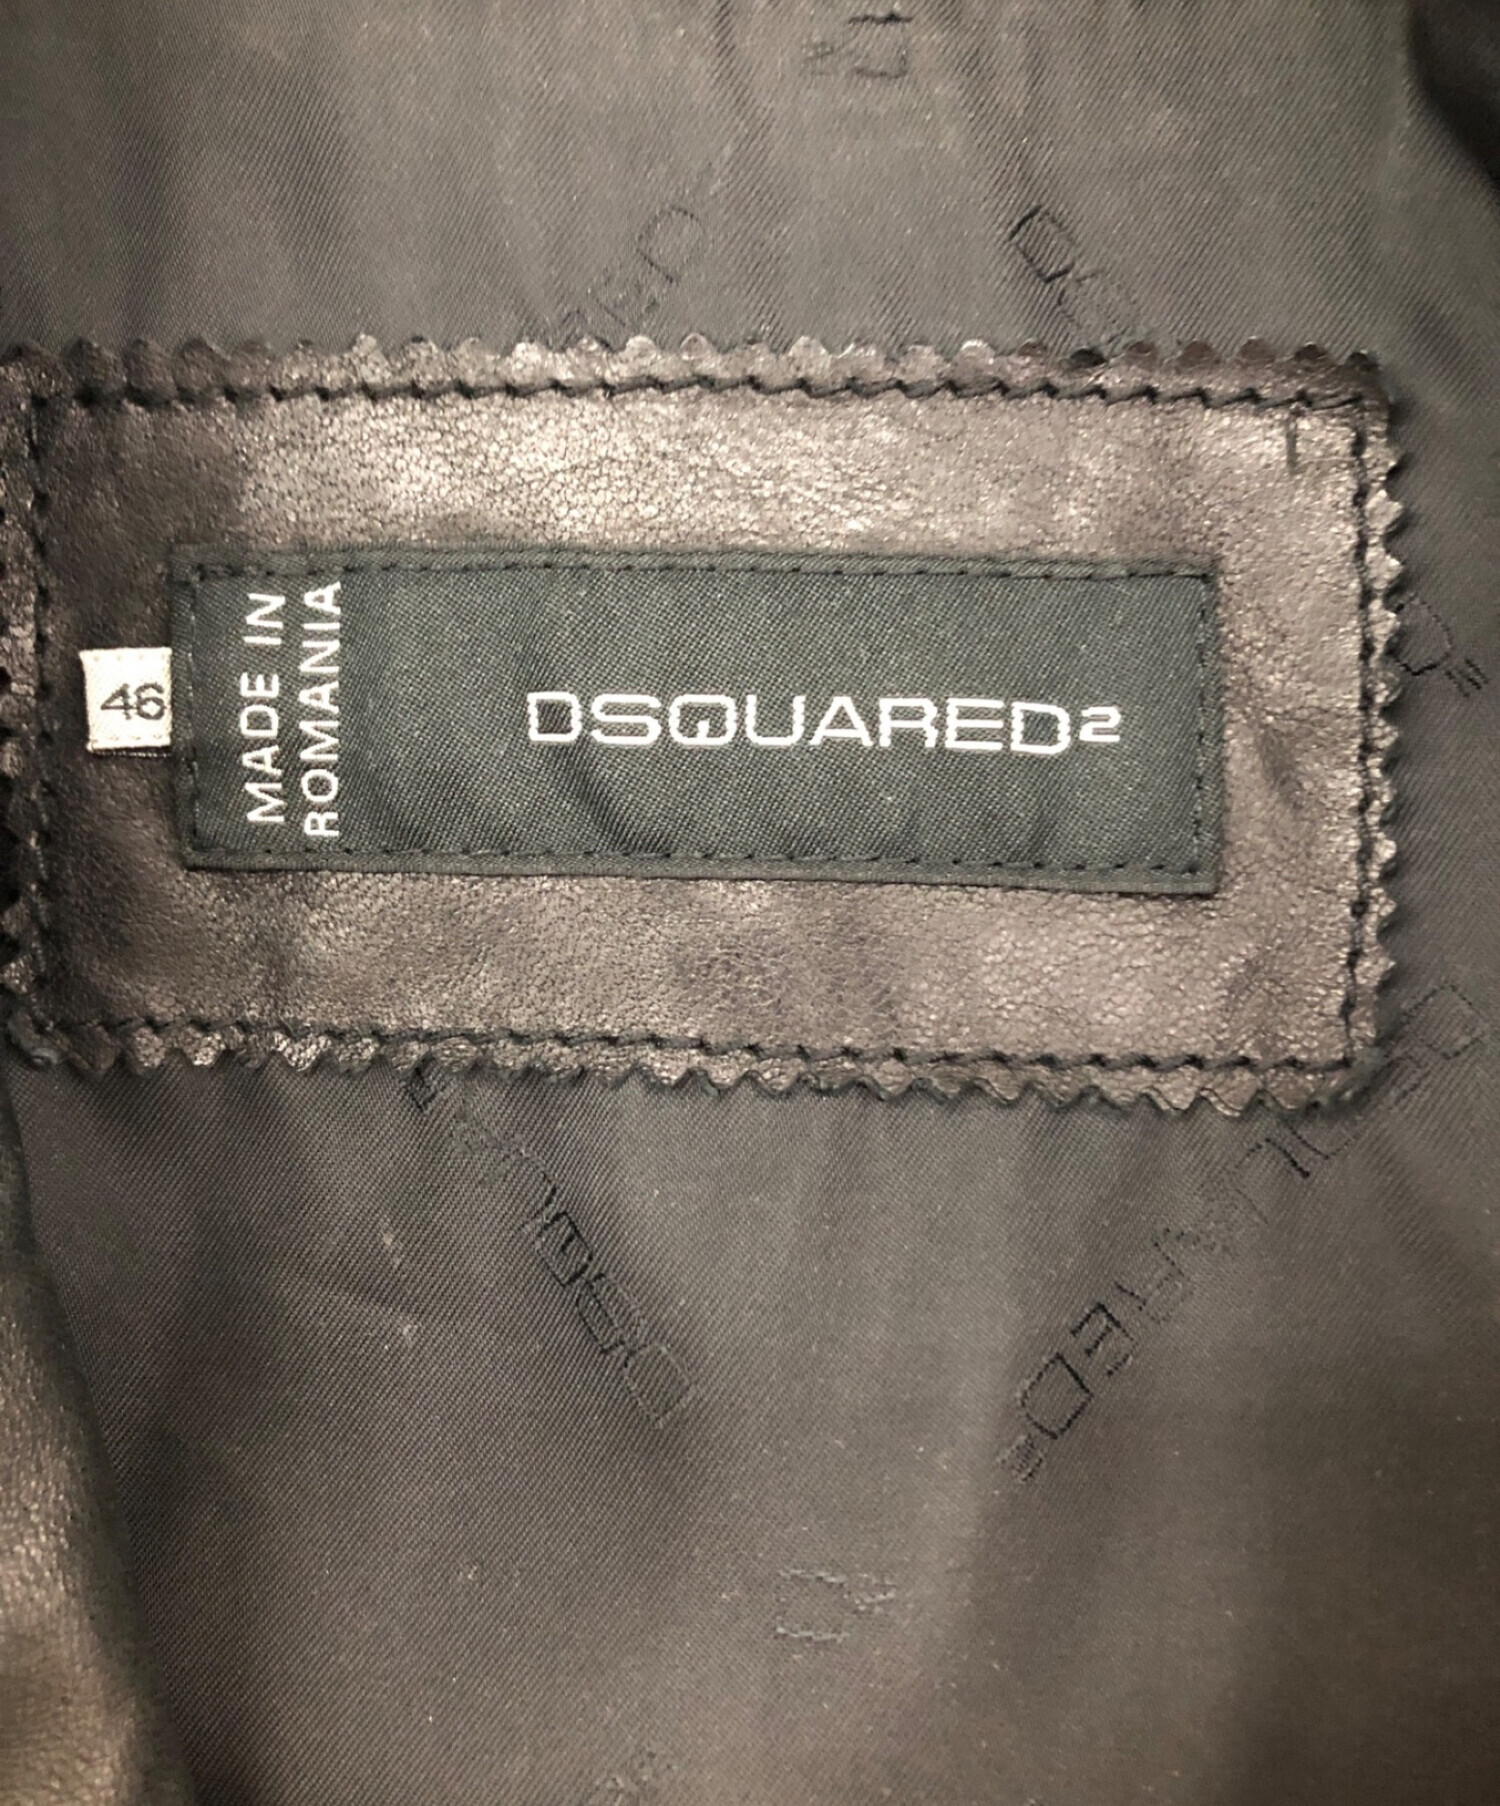 DSQUARED2 (ディースクエアード) ダブルライダースジャケット ブラック サイズ:size46